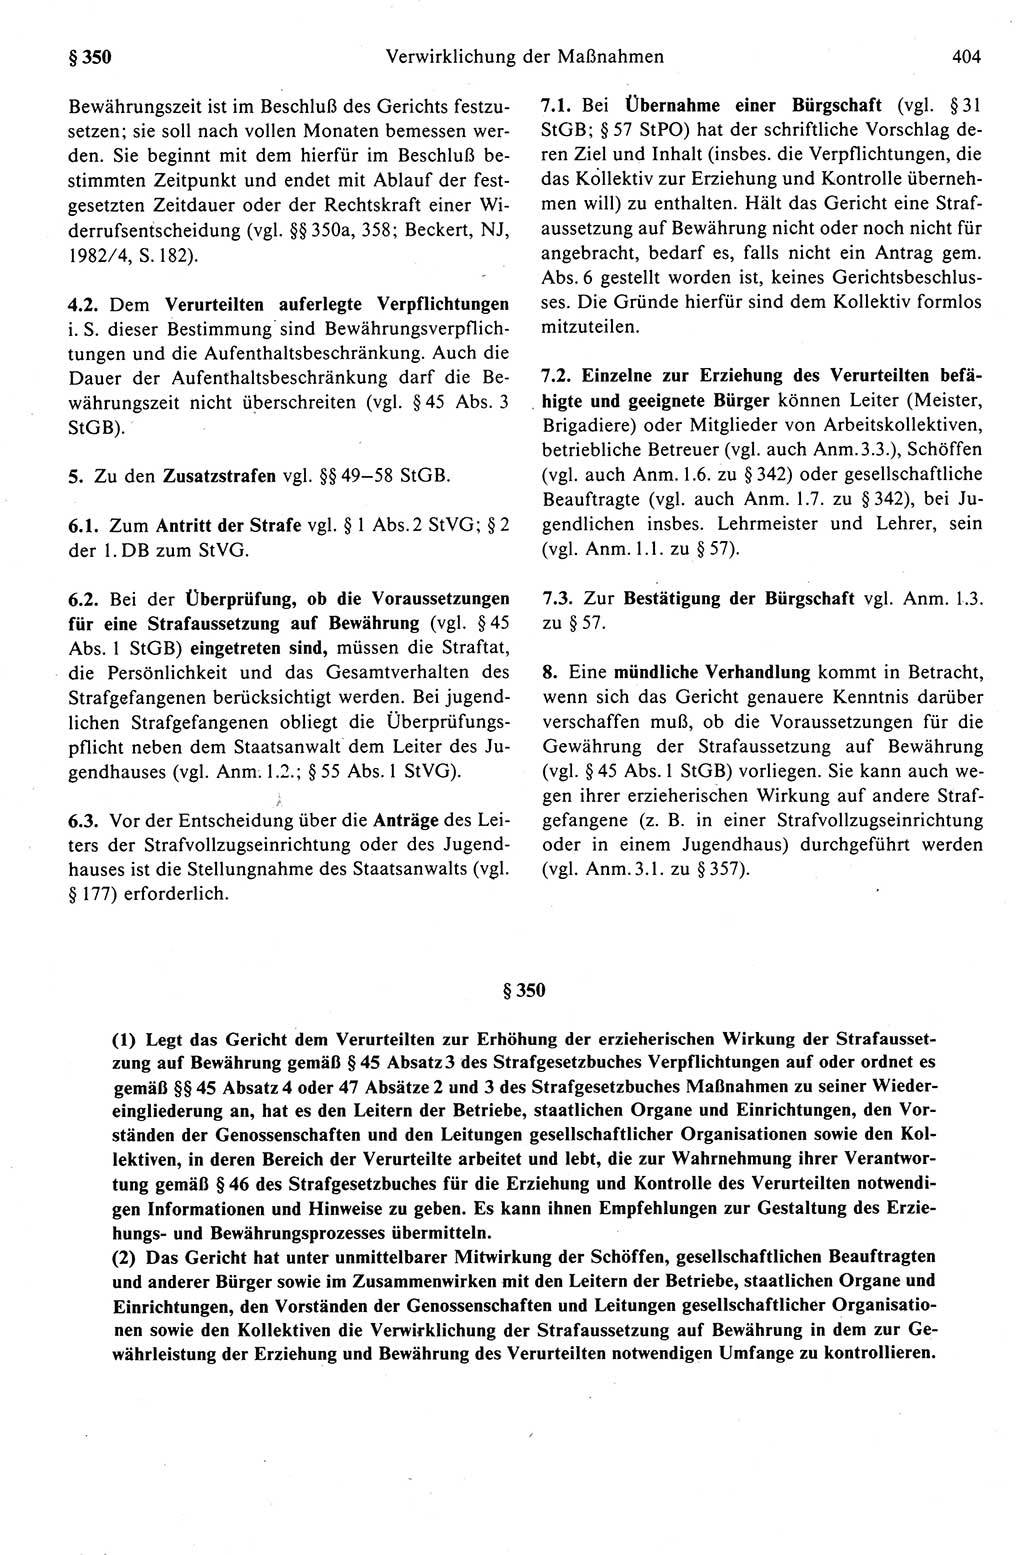 Strafprozeßrecht der DDR (Deutsche Demokratische Republik), Kommentar zur Strafprozeßordnung (StPO) 1989, Seite 404 (Strafprozeßr. DDR Komm. StPO 1989, S. 404)